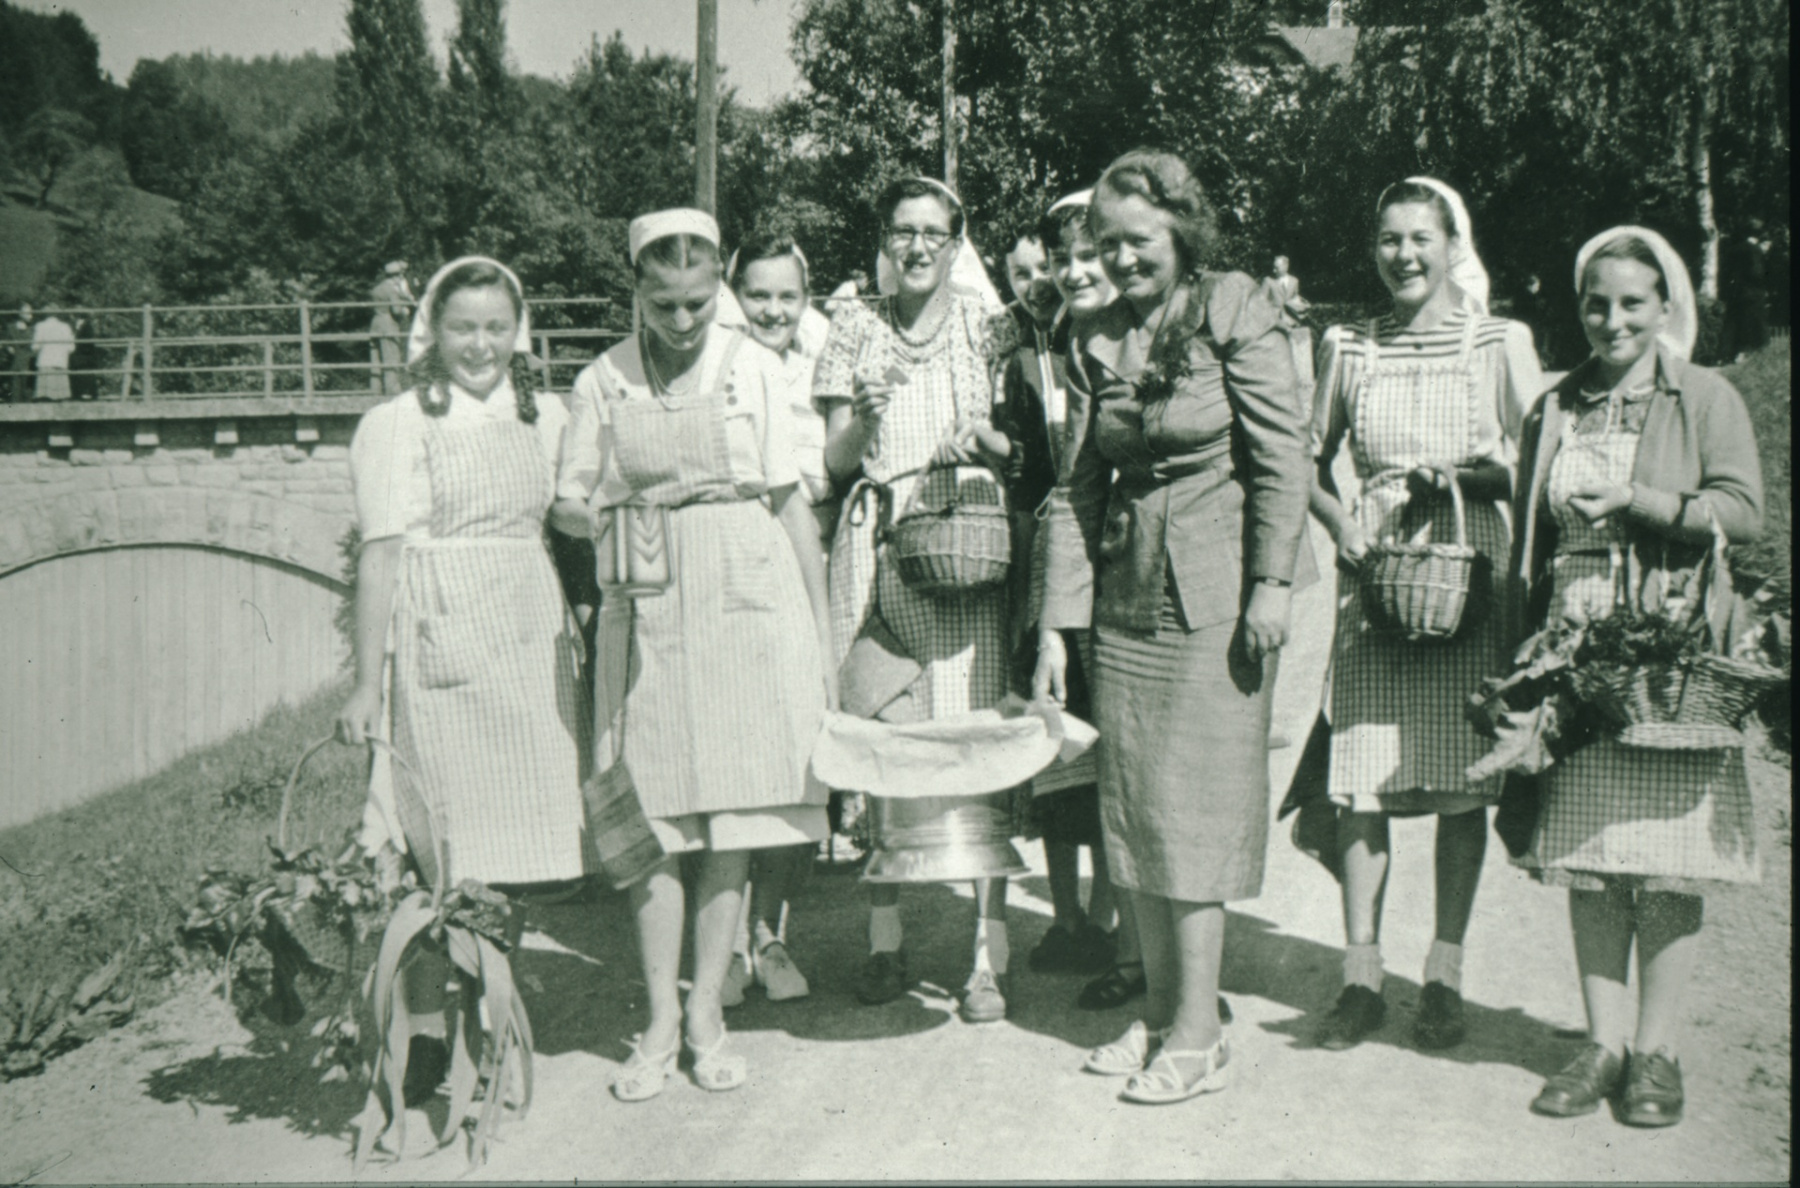 Schulhauseinweihung Dorf 1952. Lilli Hürlimann, Haushaltungslehrerin, Tochter von Theodor Hürlimann, mit Schülerinnen